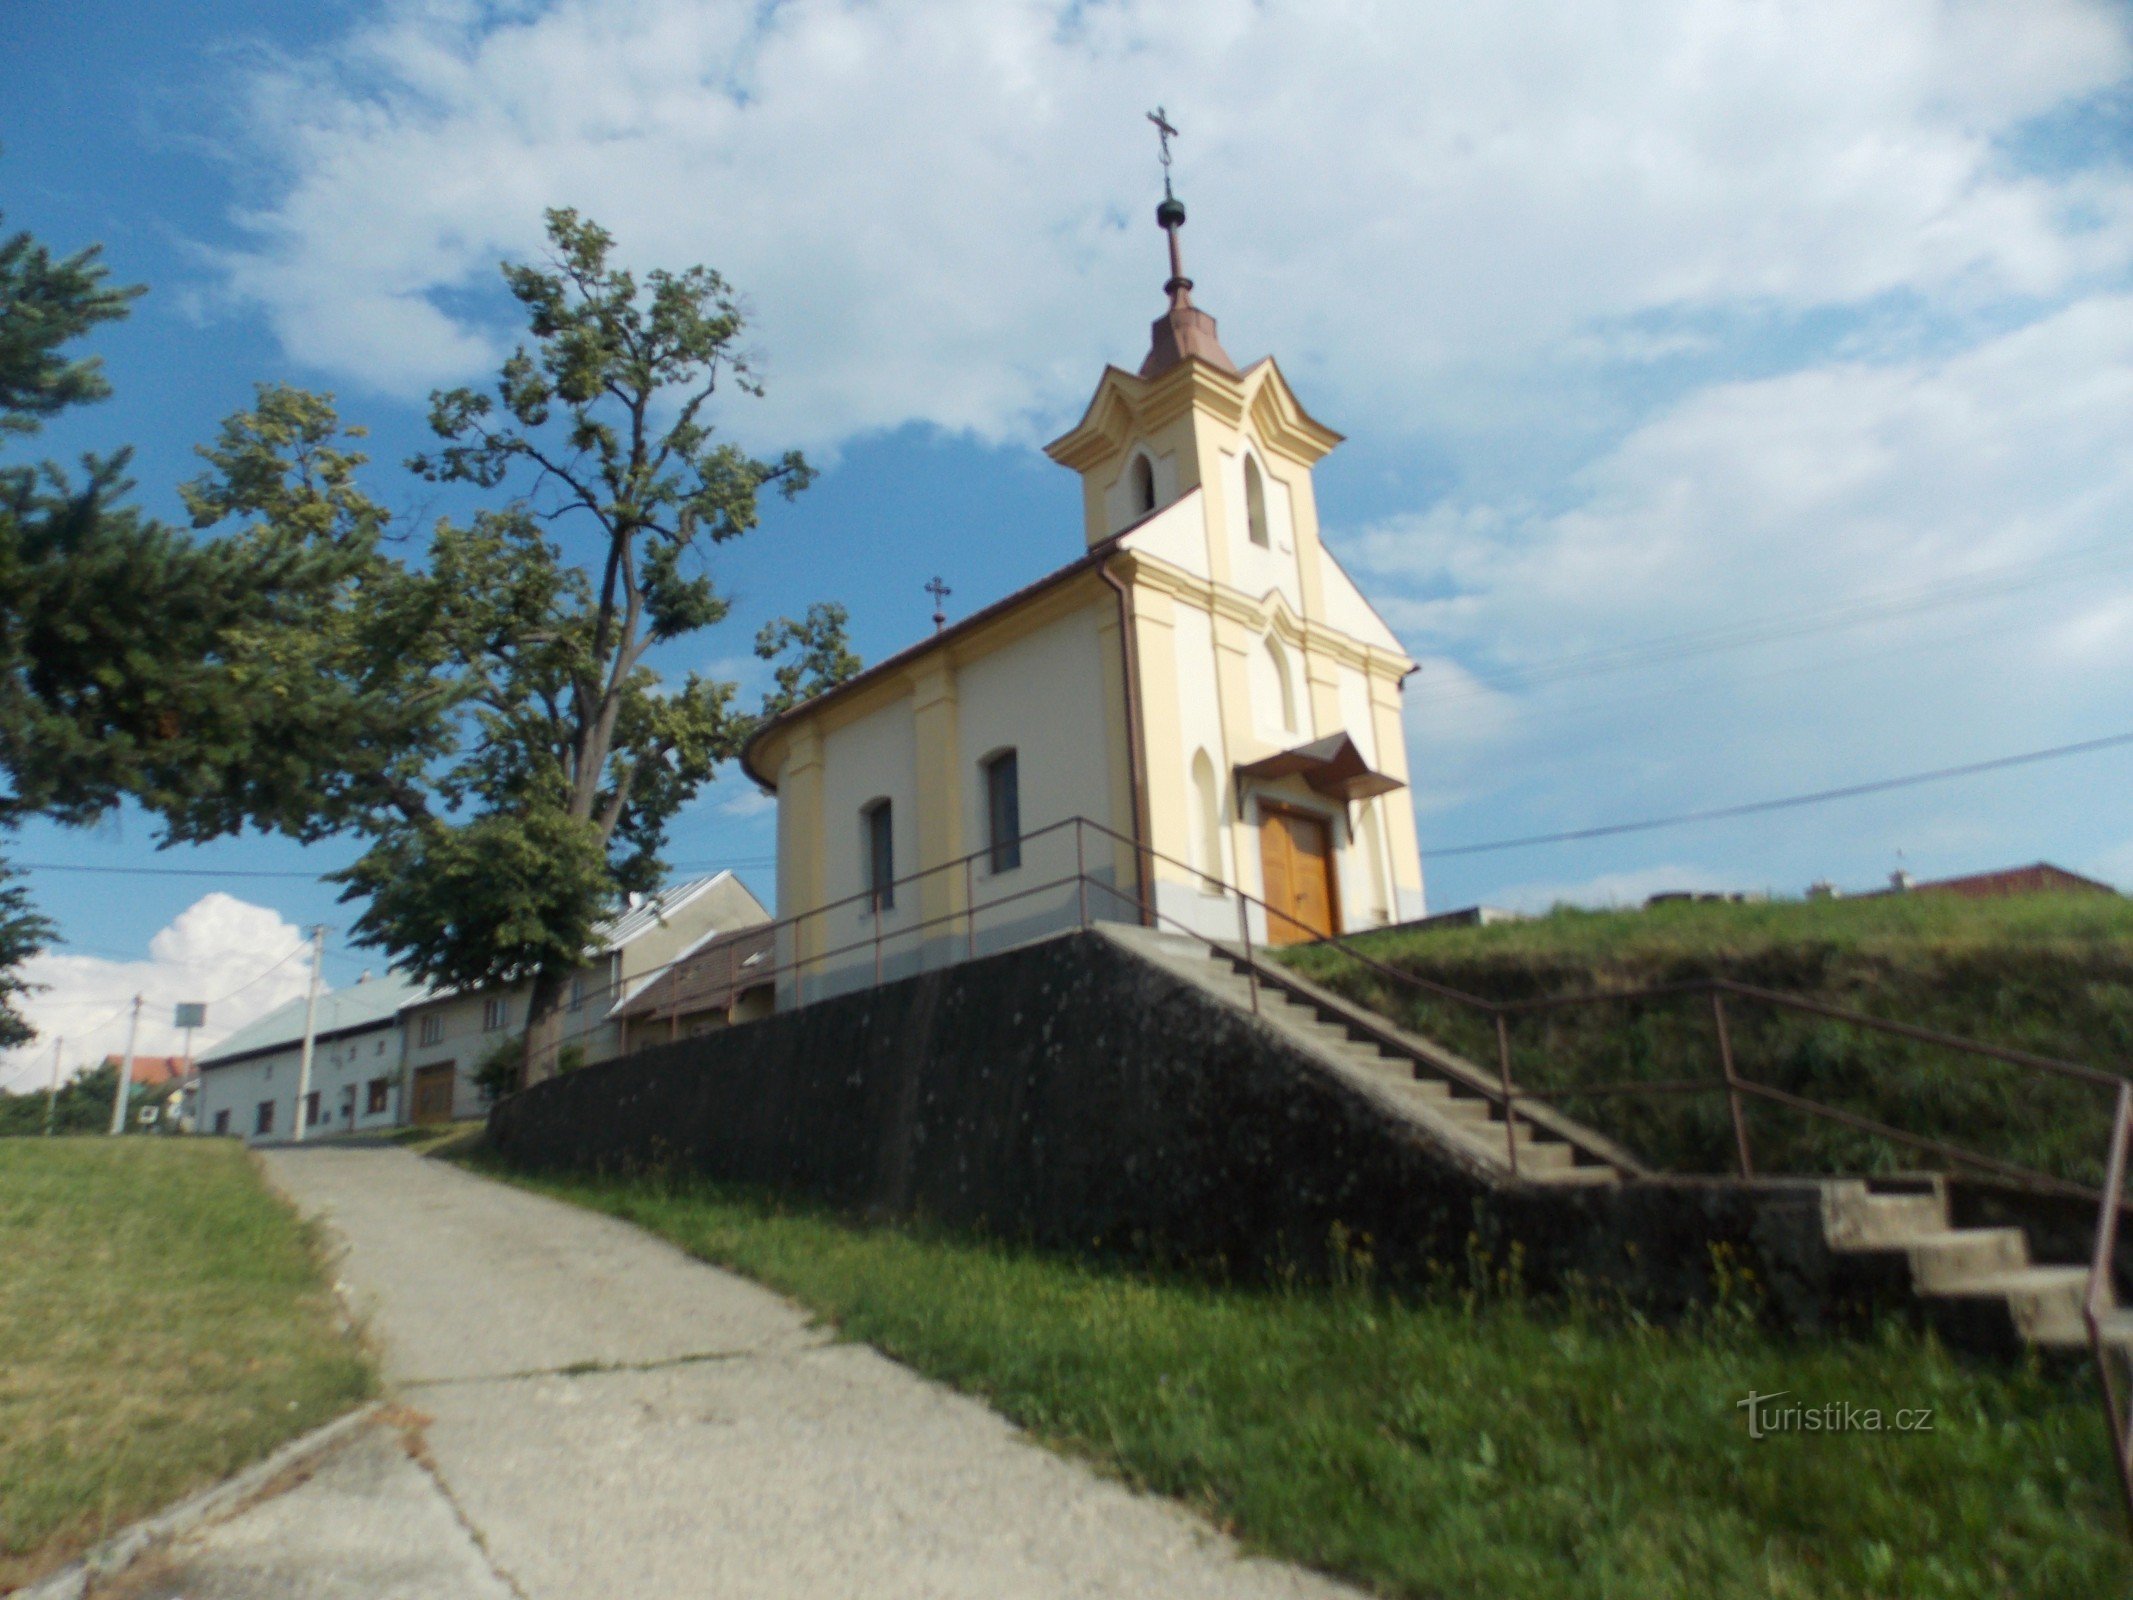 Hostišován kylään Zlínin alueella